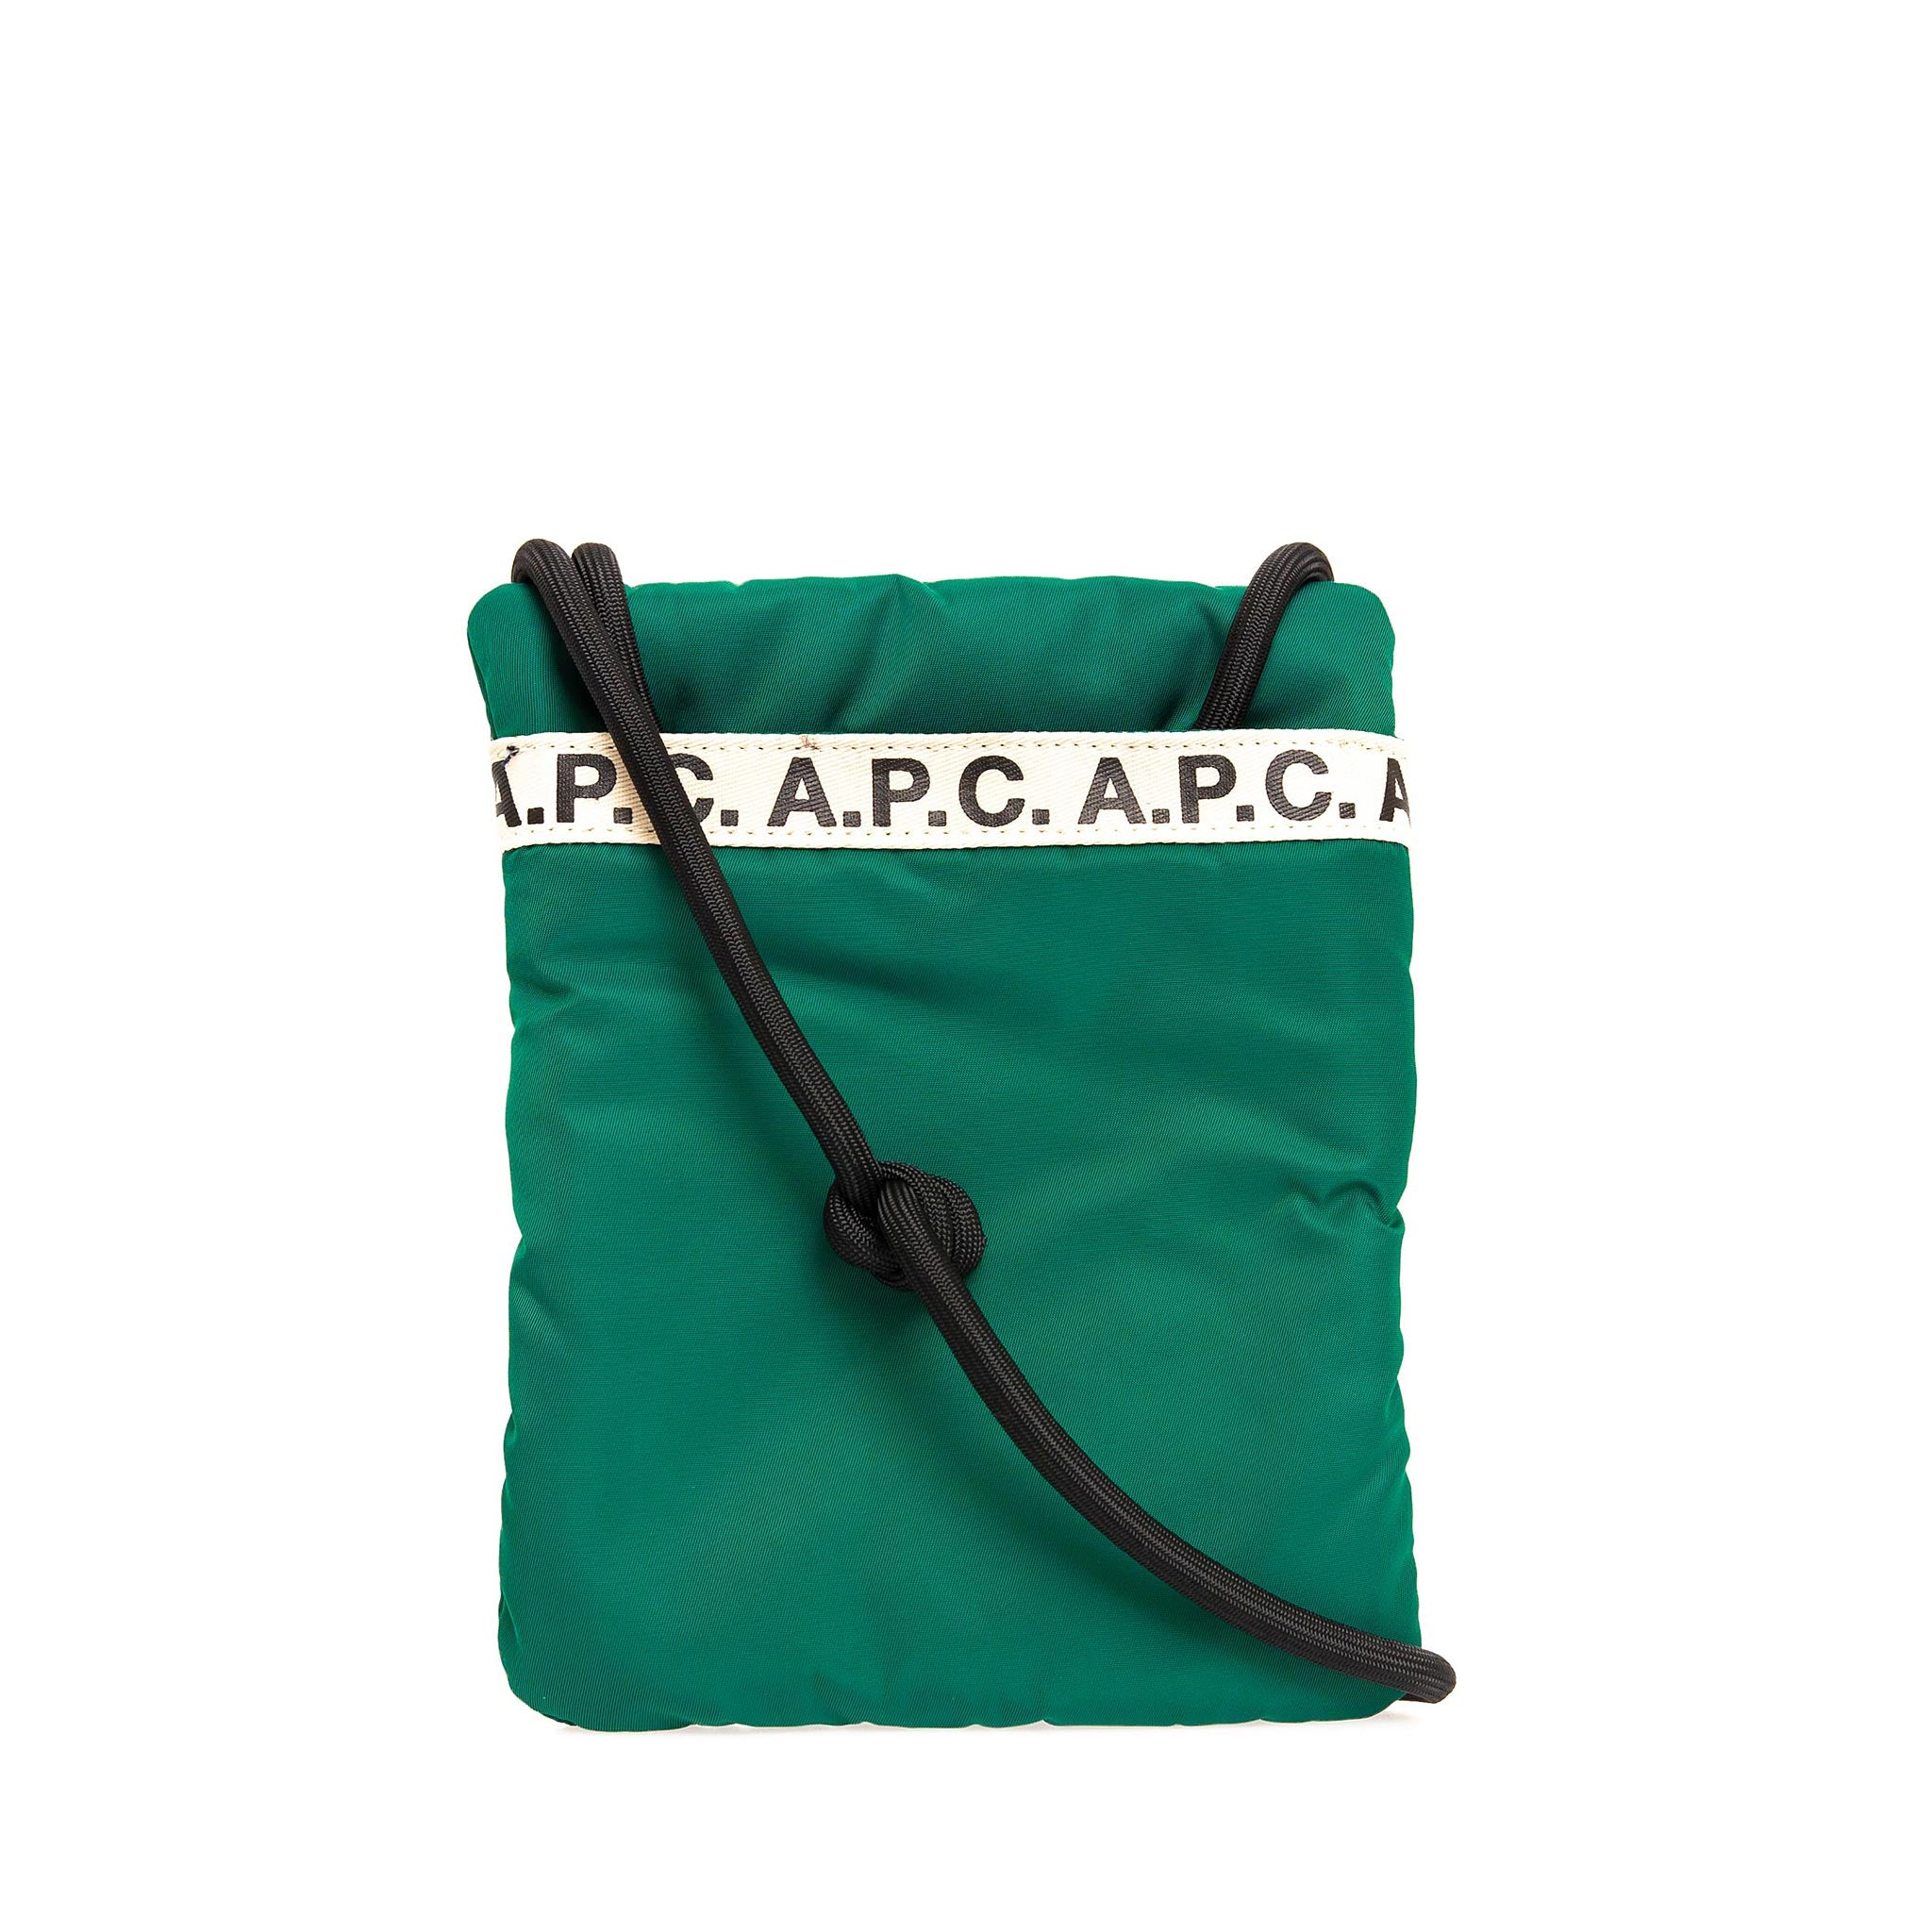 A.P.C. - REPEAT NECK POUCH PAACL H63390 – CHG